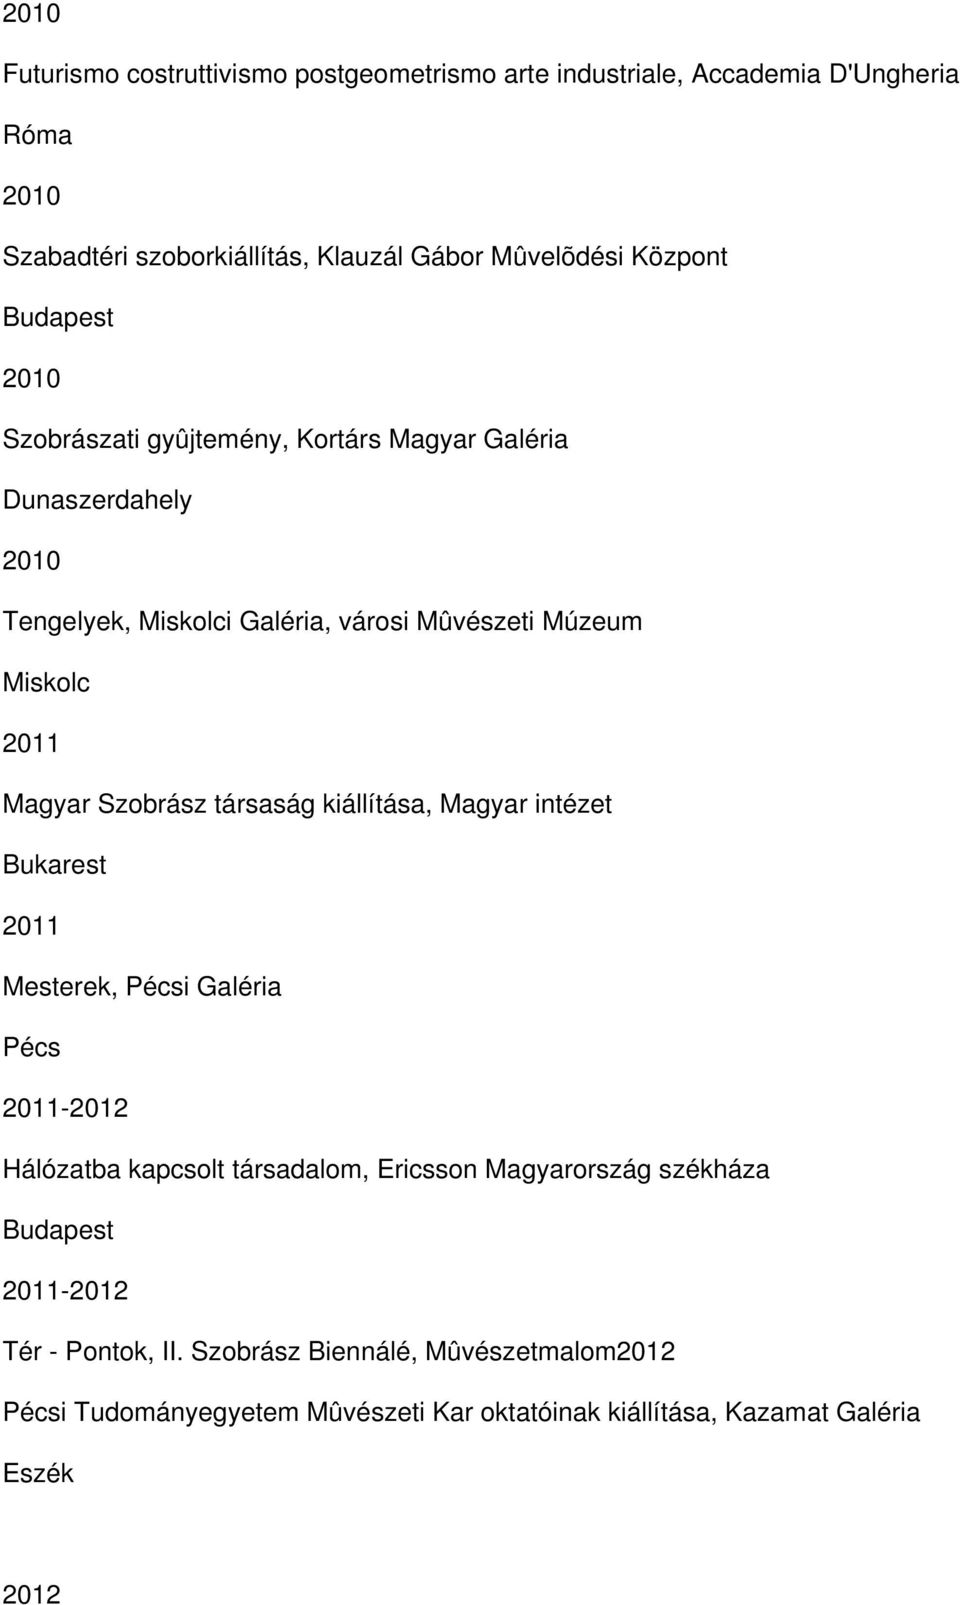 Magyar Szobrász társaság kiállítása, Magyar intézet Bukarest 2011 Mesterek, i Galéria 2011-2012 Hálózatba kapcsolt társadalom, Ericsson Magyarország